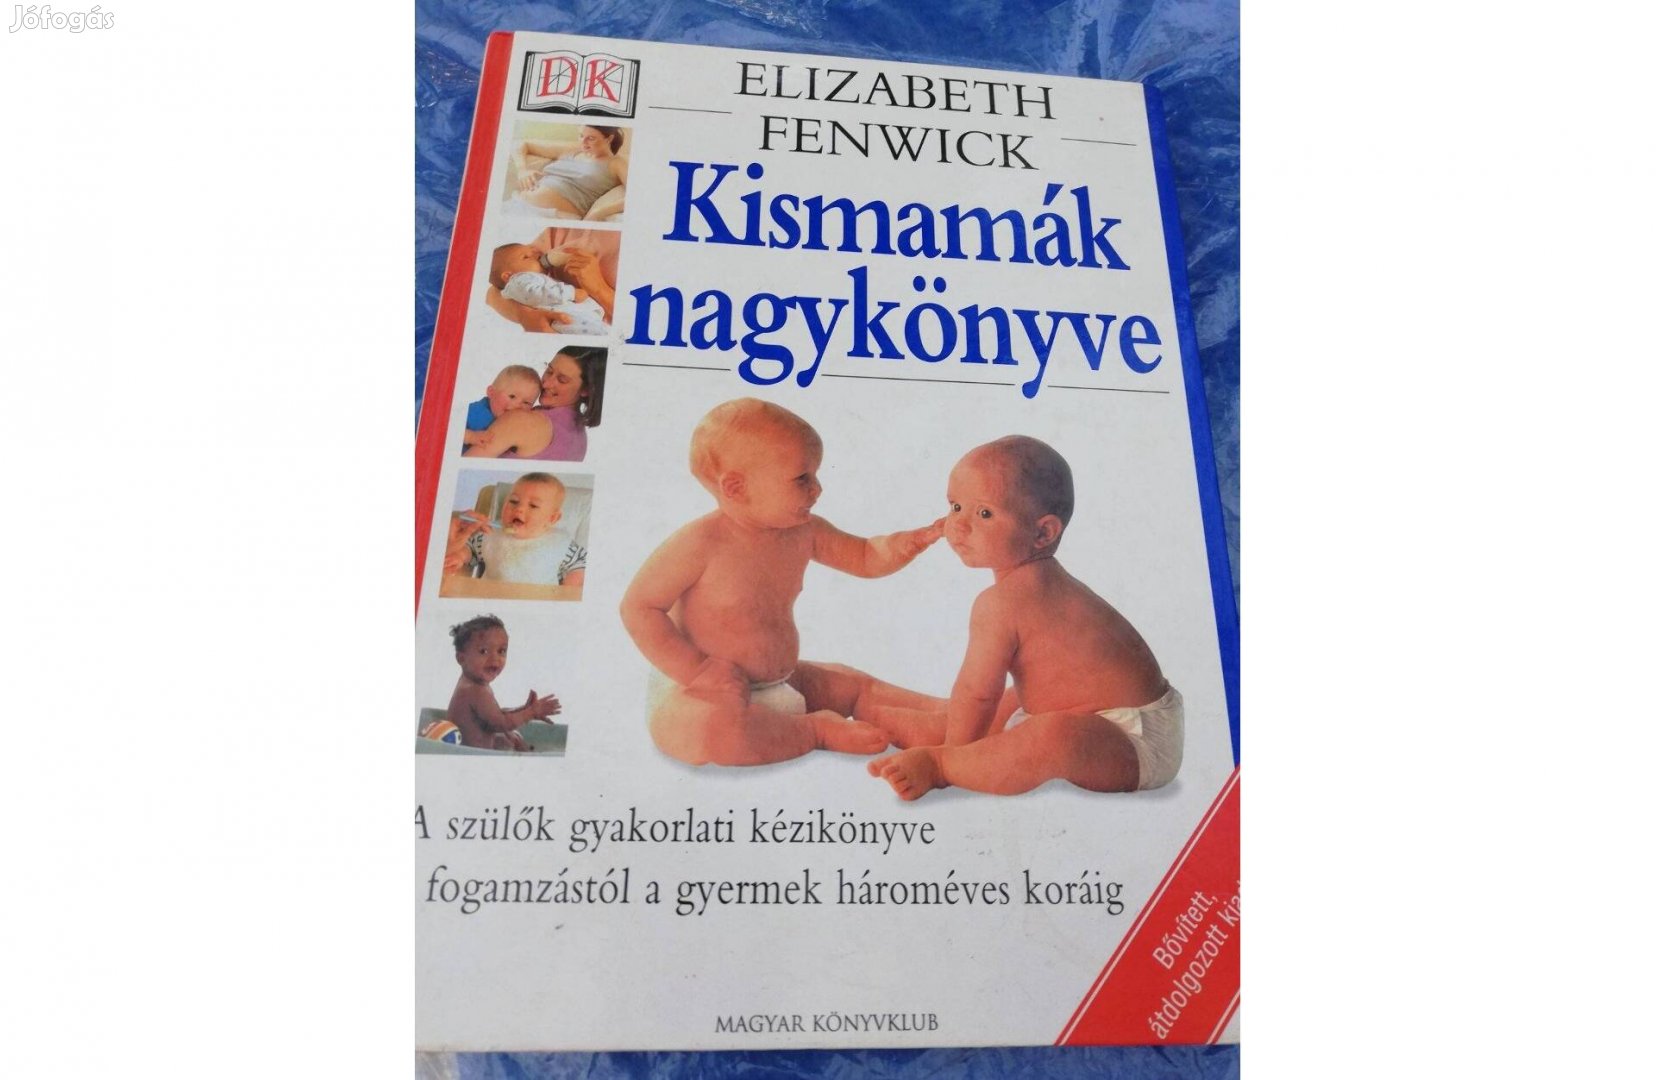 Kismamák nagykönyve c. könyv 800 forintért eladó